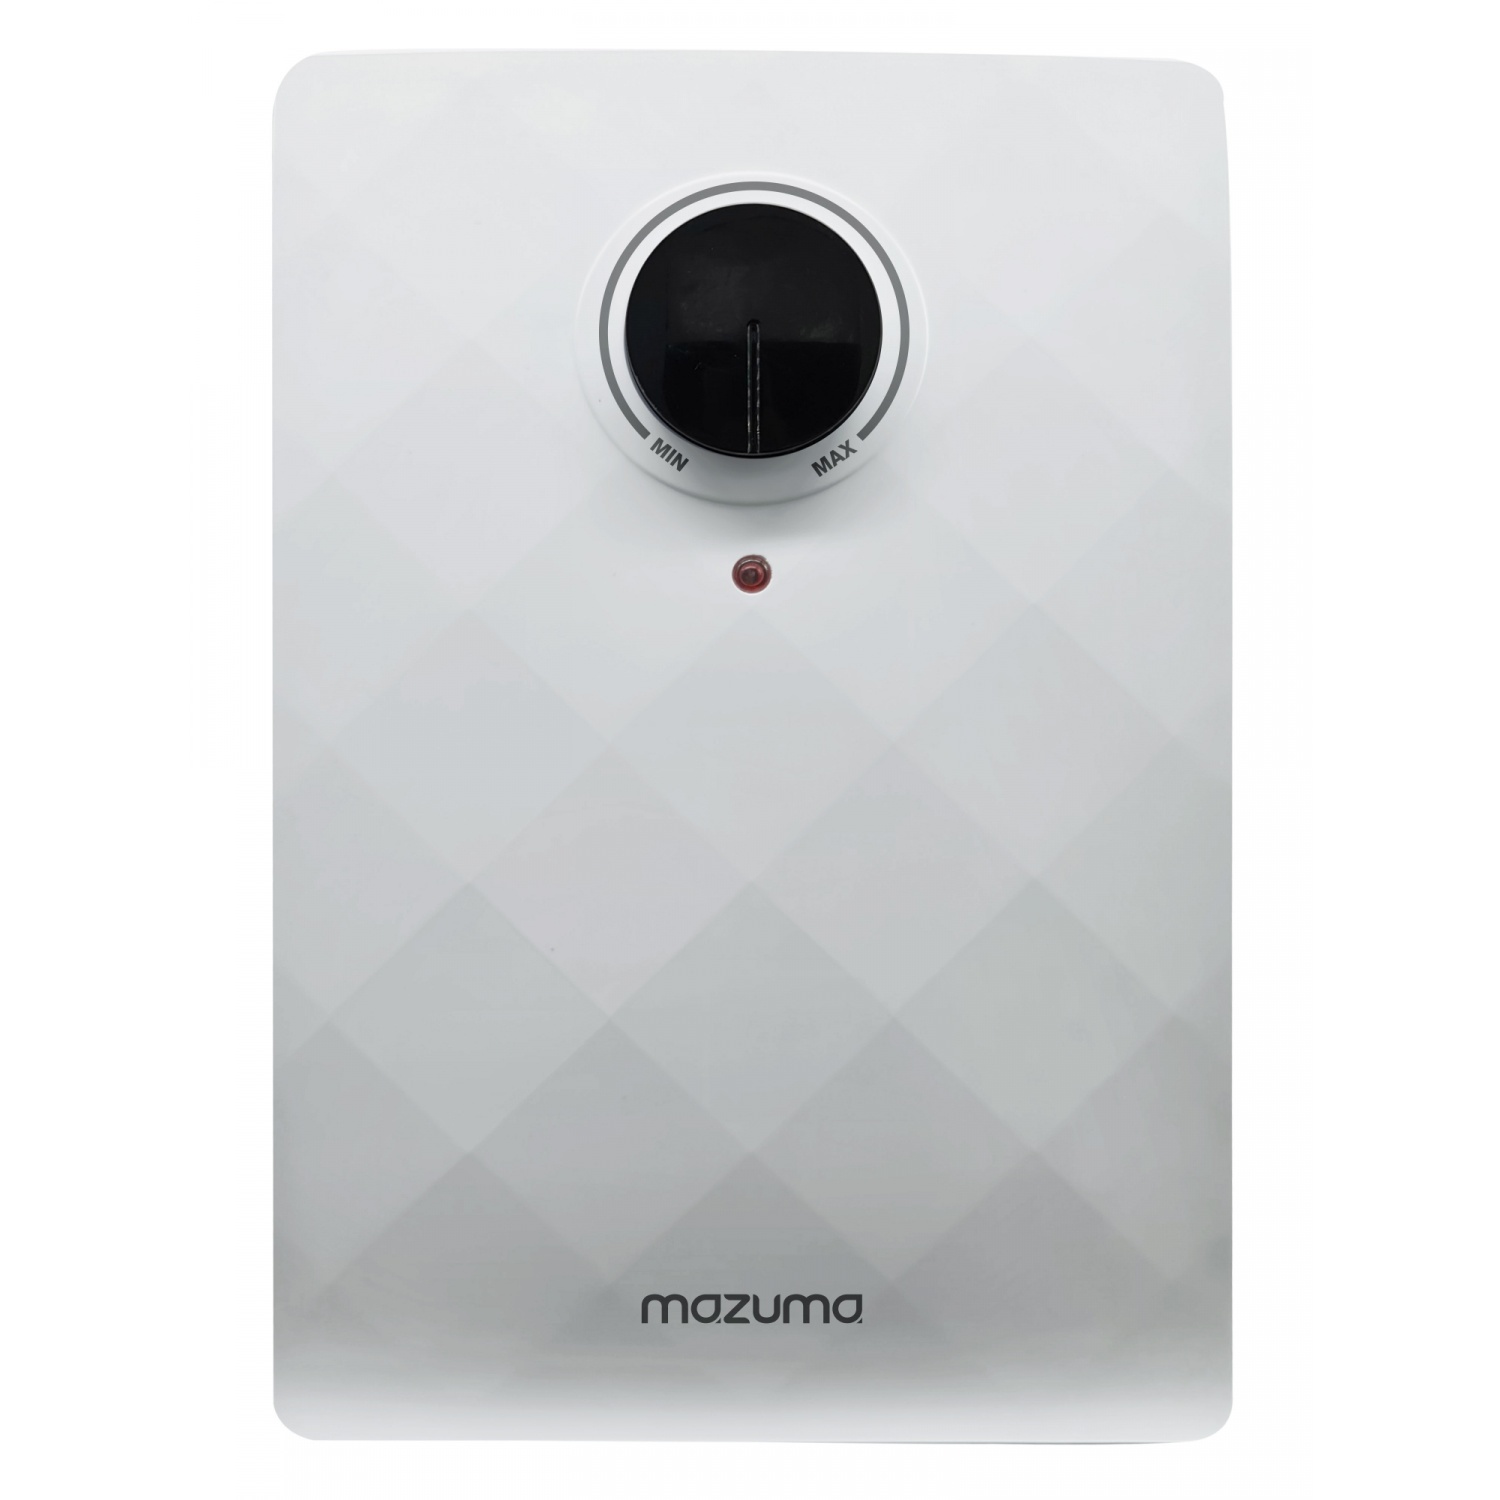 MAZUMA เครื่องทำน้ำอุ่น PRIMA 4.5 W สีขาว